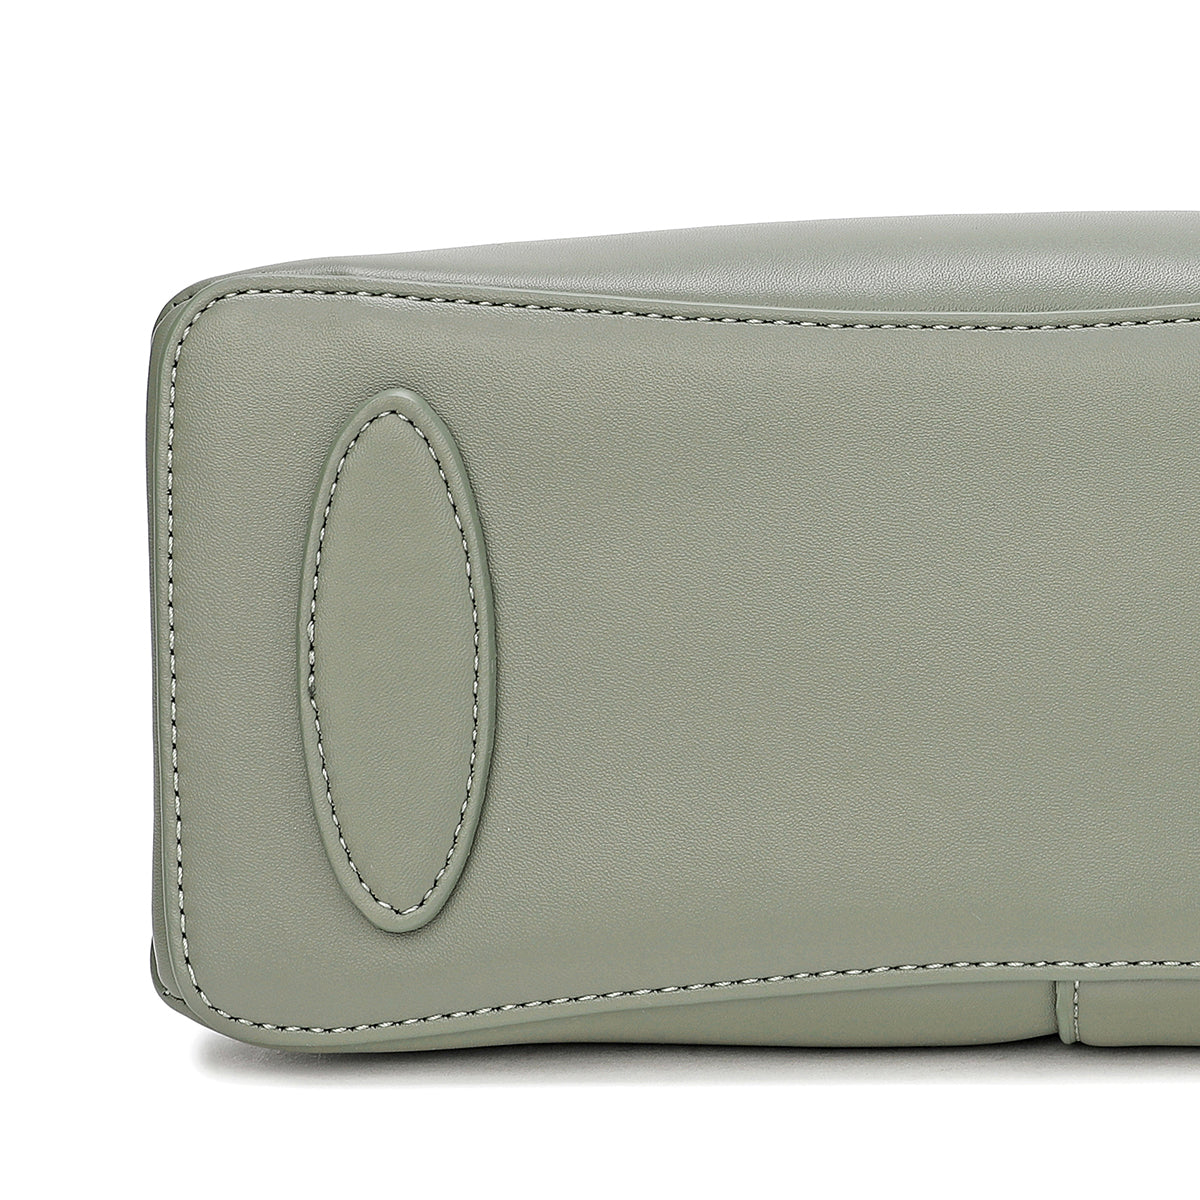 Handbag with shoulder strap, adjustable strap, width 26 cm, in green or black